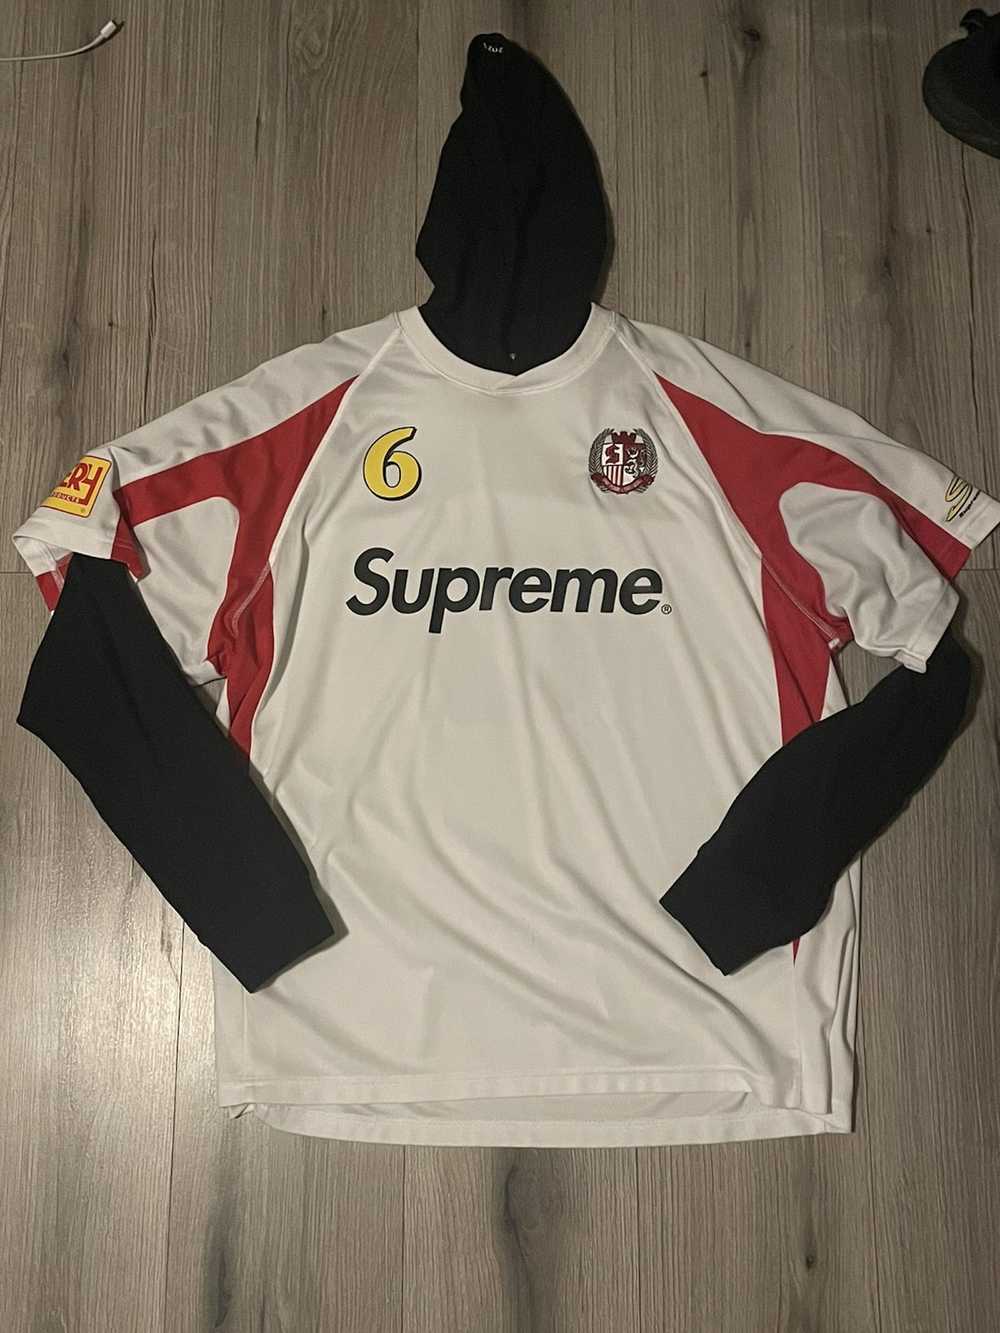 Supreme Supreme Hooded Soccer Jersey - image 1